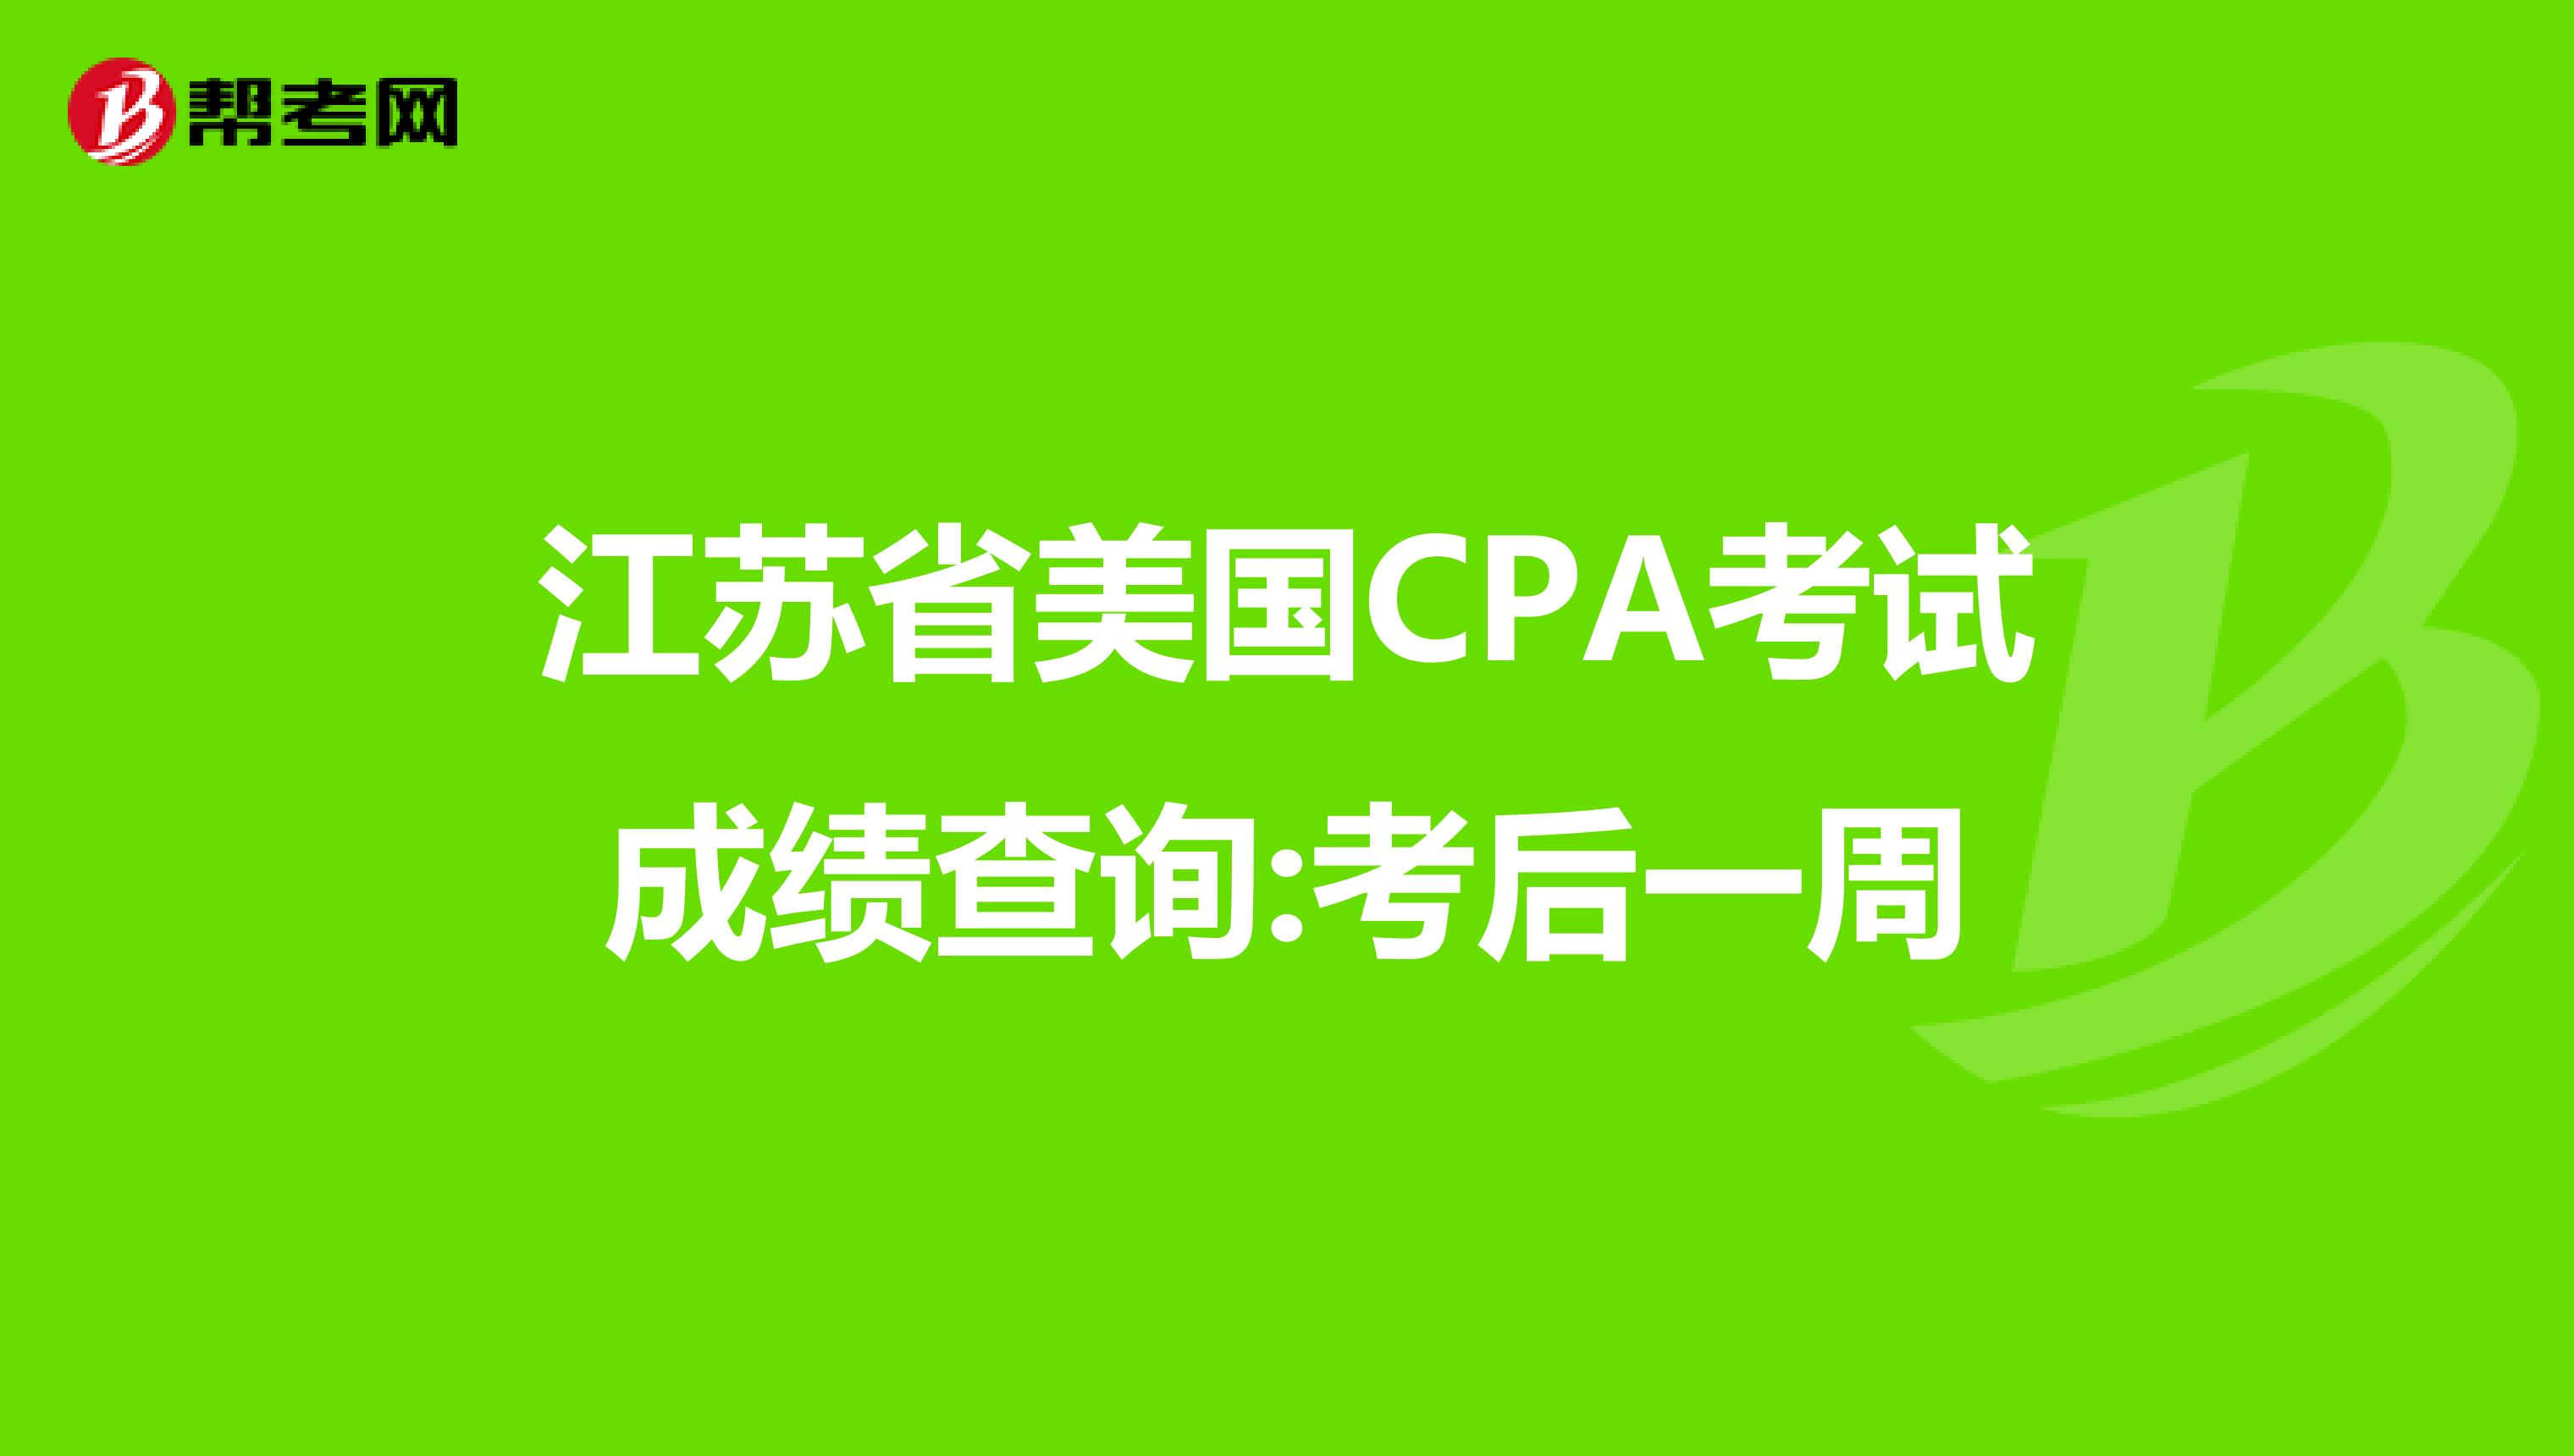 江苏省美国CPA考试成绩查询:考后一周